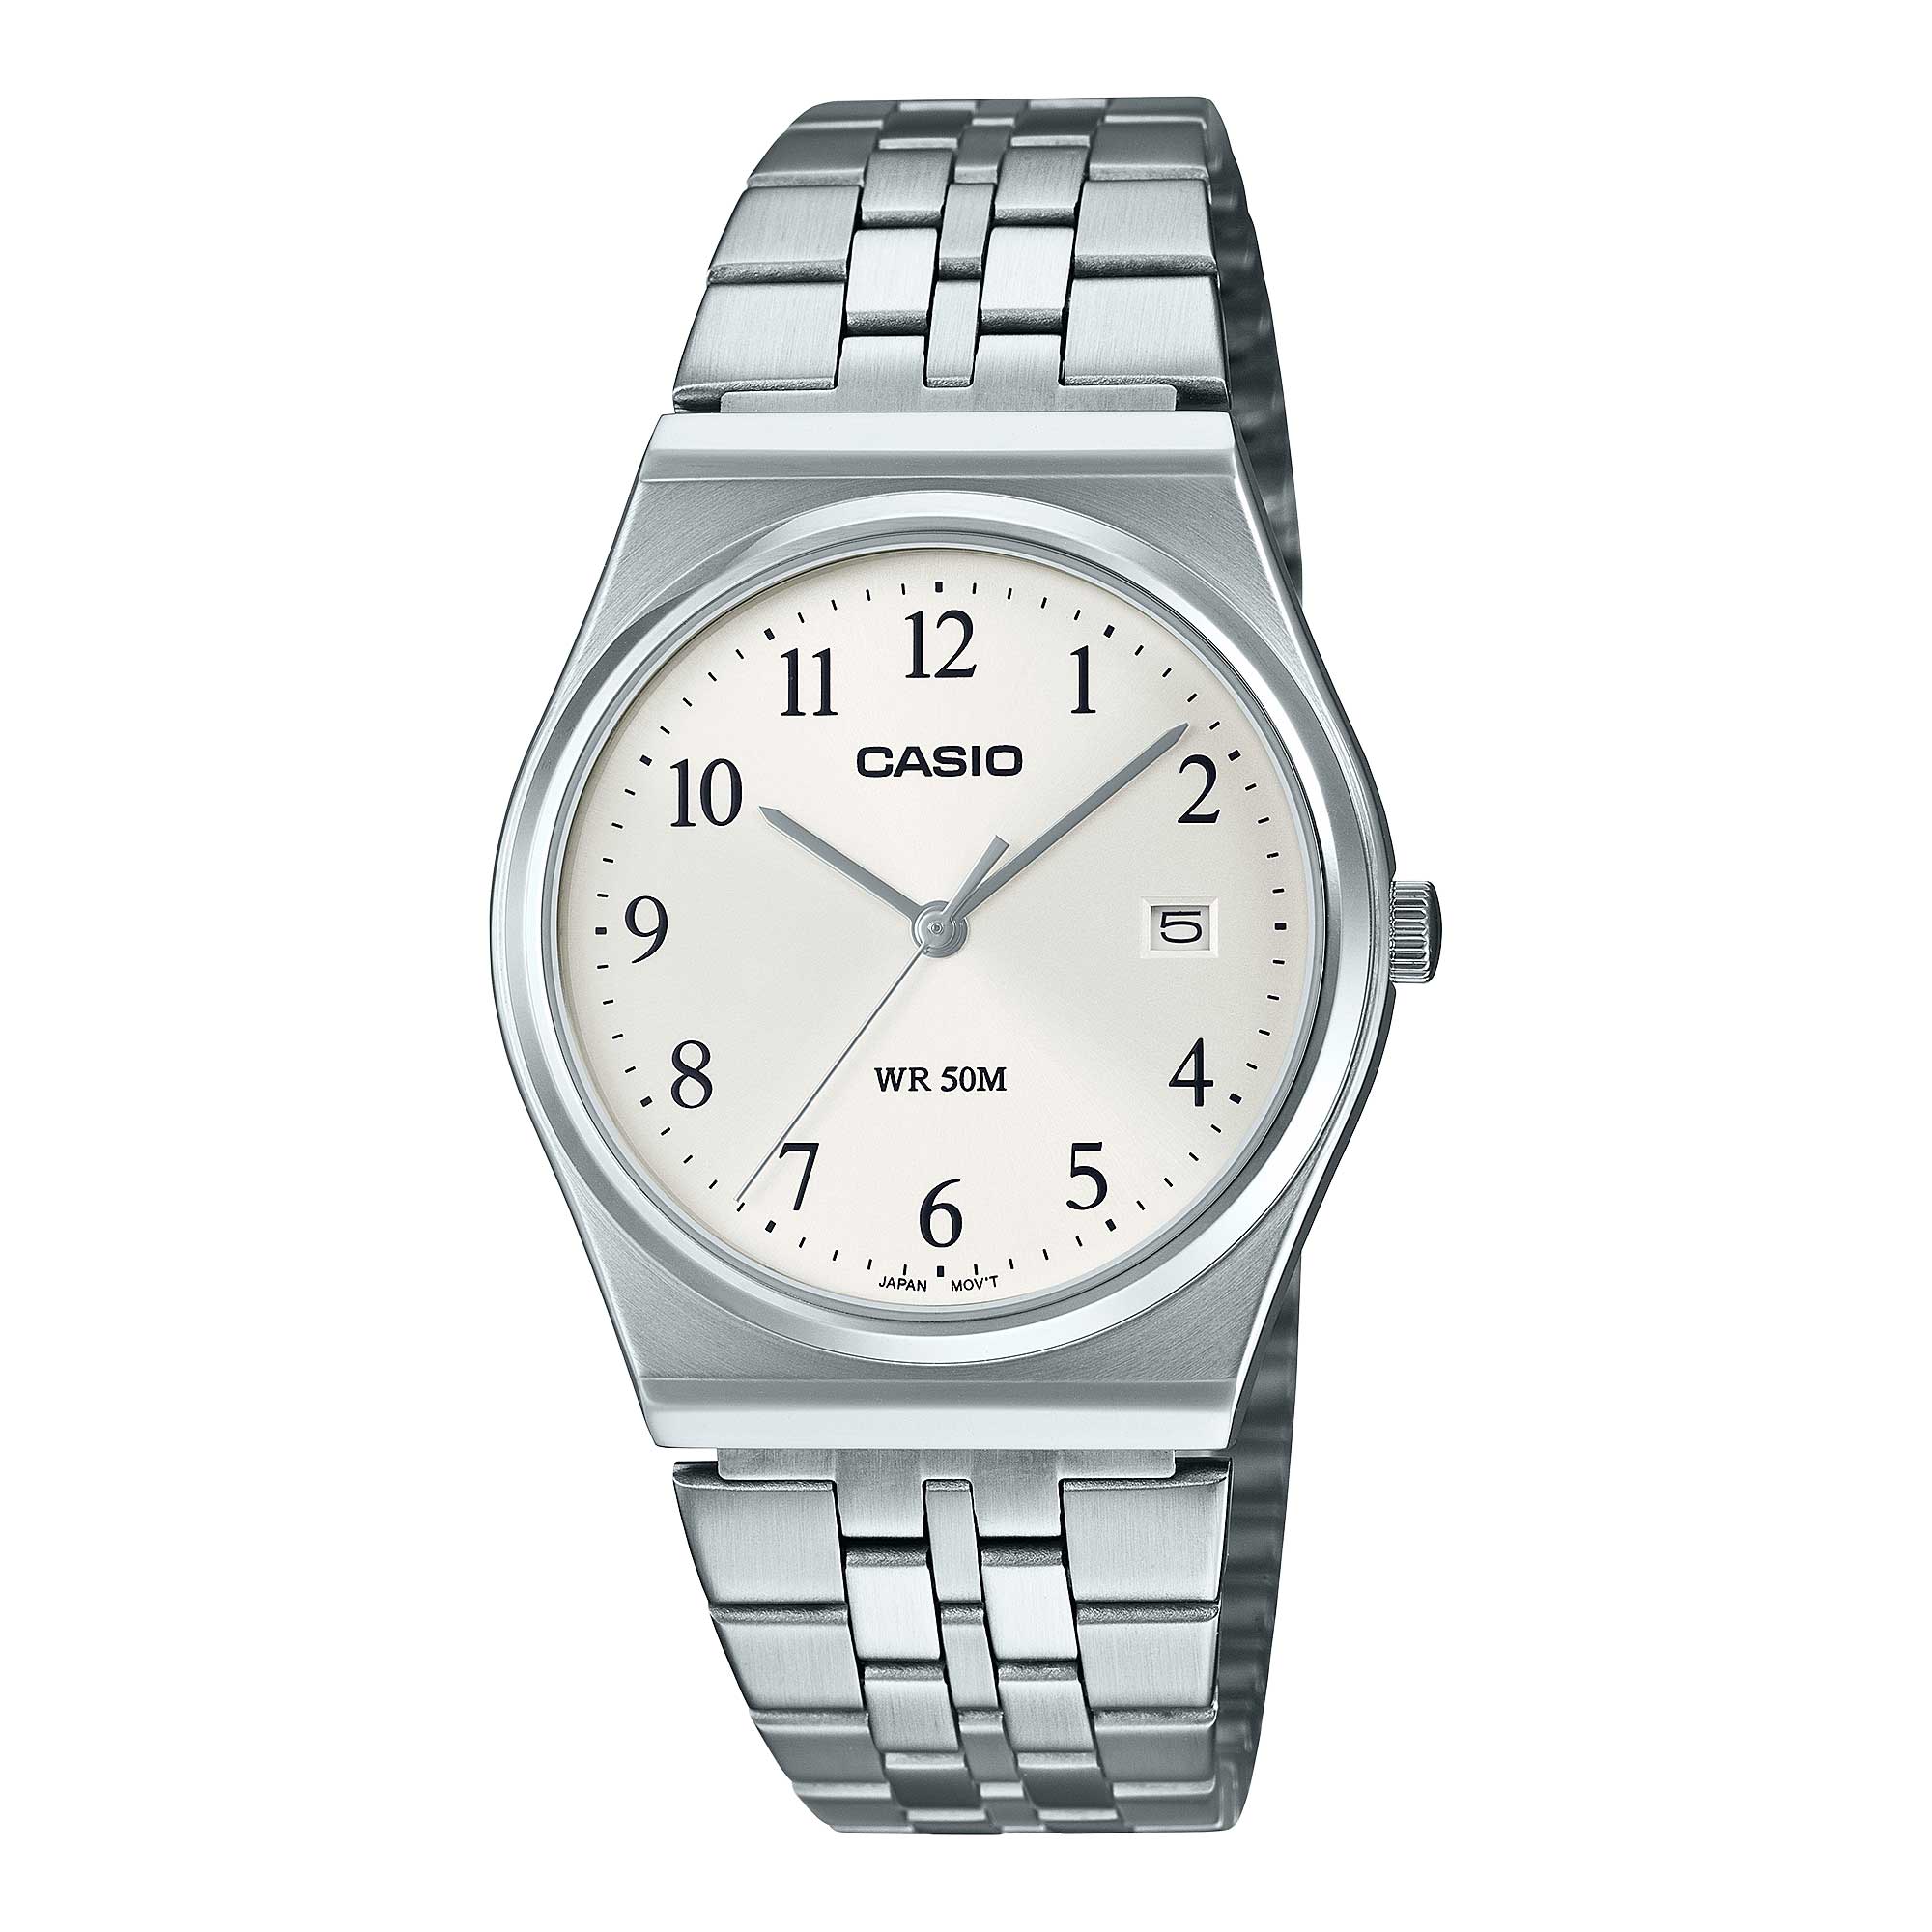 Casio Men's Analog Retro Look Minimalist Dial Watch MTPB145D-7B MTP-B145D-7B